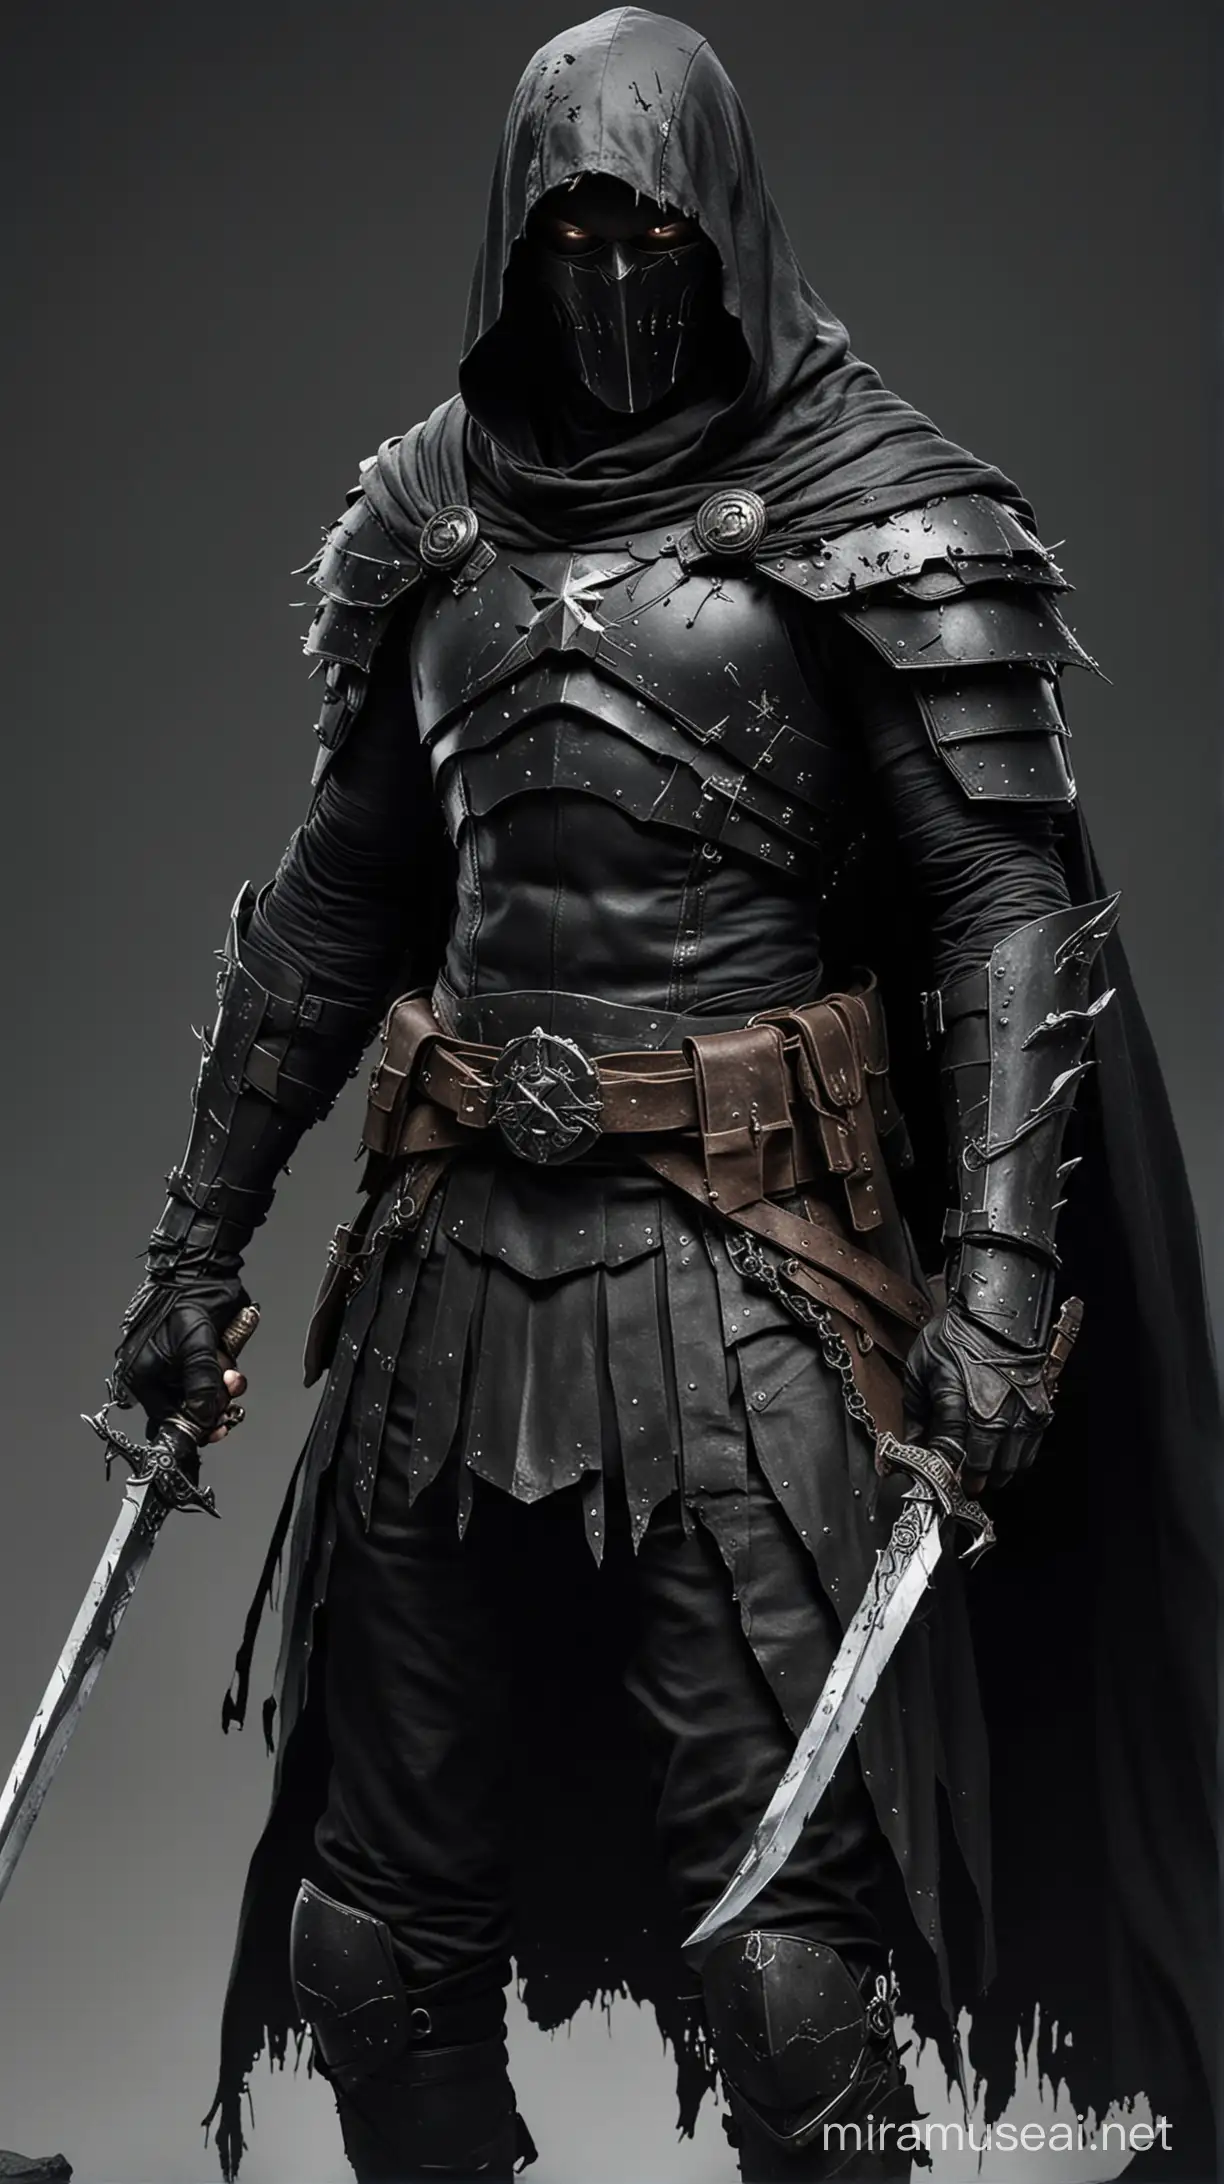 Fearsome Dark Commander in Tattered Armor Wielding a Black Blade